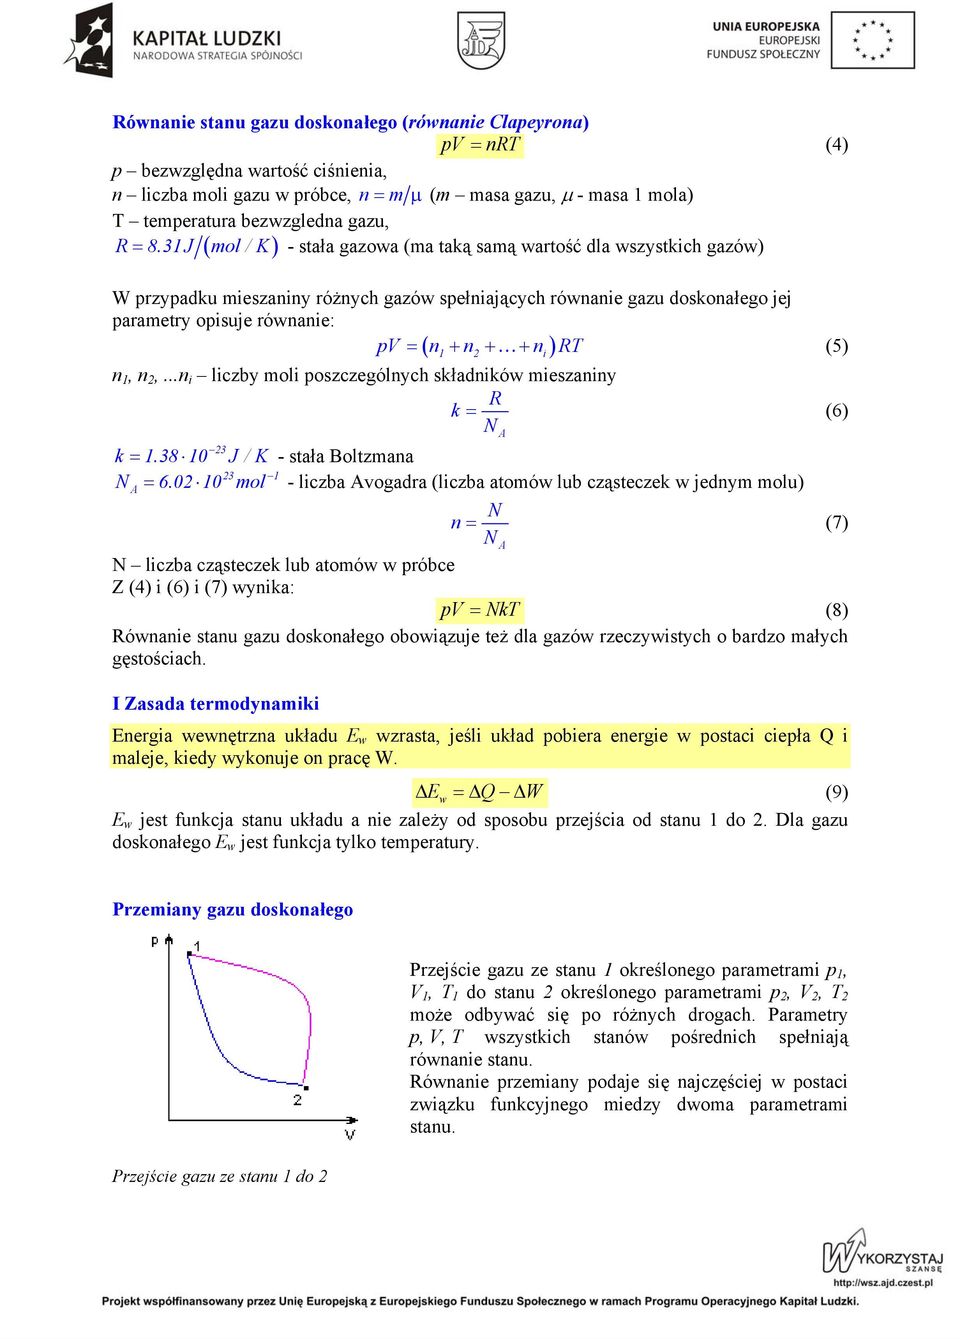 31J mol / K - stała gazowa (ma taką samą wartość dla wszystkich gazów) ( ) W przypadku mieszaniny różnych gazów spełniających równanie gazu doskonałego jej parametry opisuje równanie: pv = n + n + +